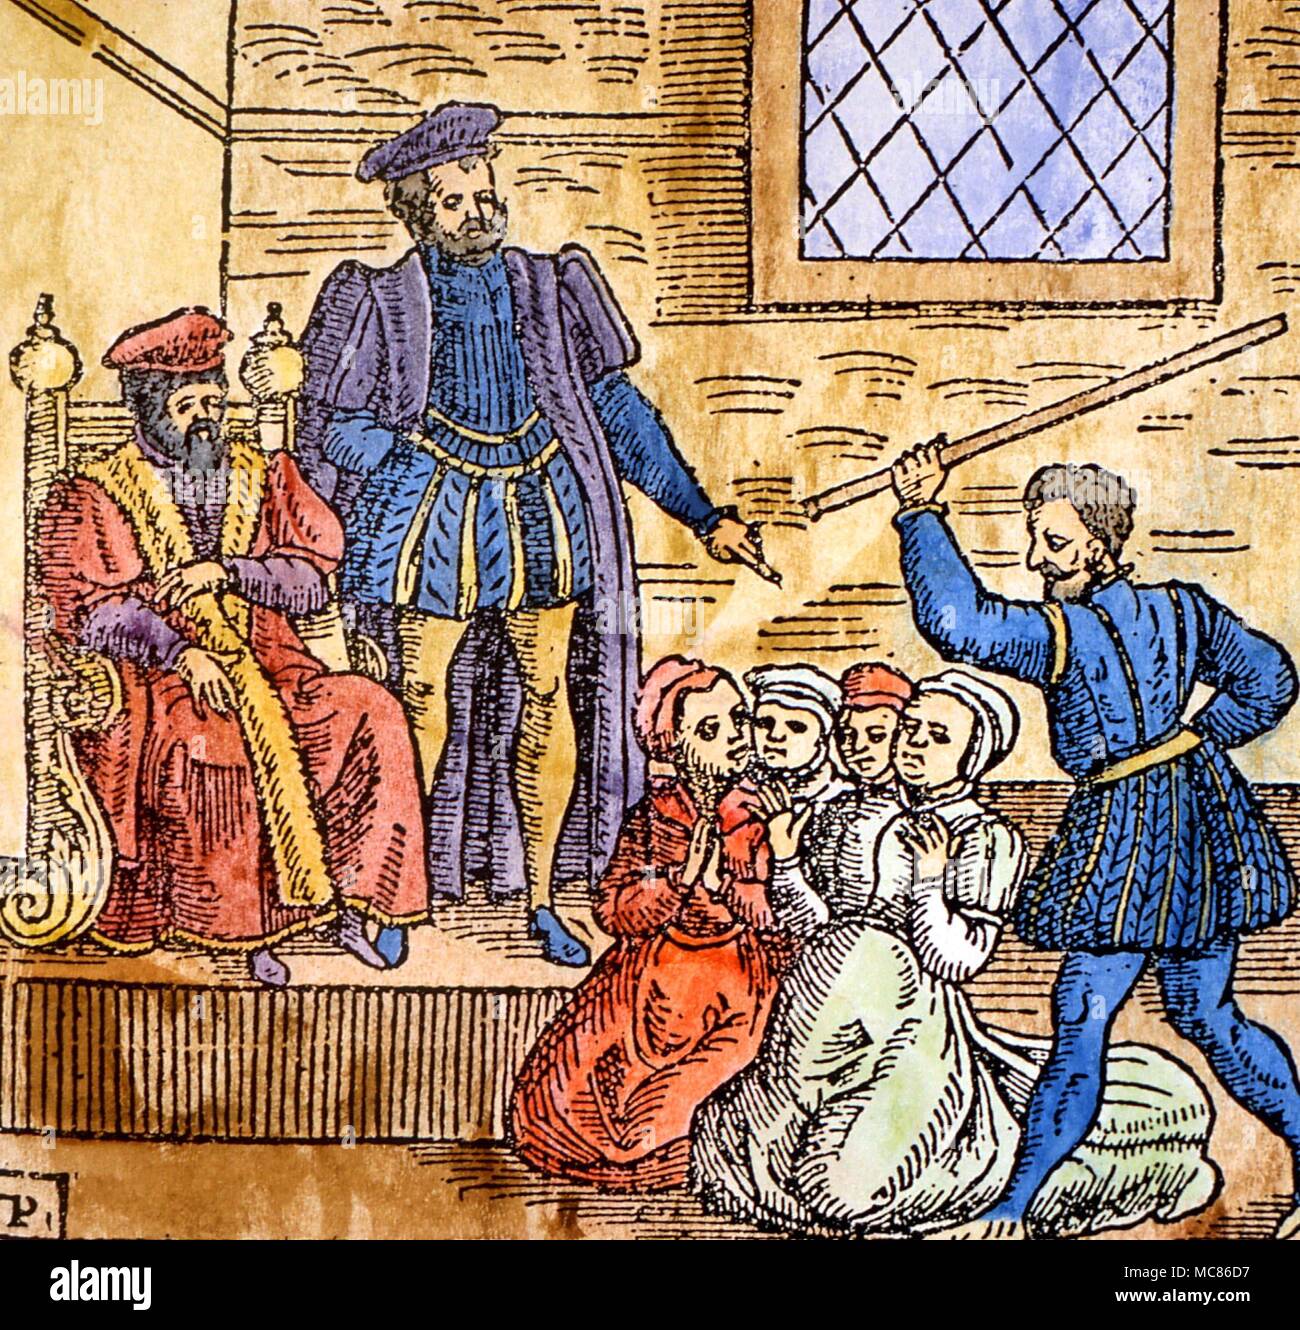 Hexerei Holzschnitt mit dem schottischen König James VI (später James I von England), die Beaufsichtigung der Folter von Hexen in Edinburgh. ca. 1590. Aus der Ausgabe 1591 der "Newes aus Schottland". Stockfoto